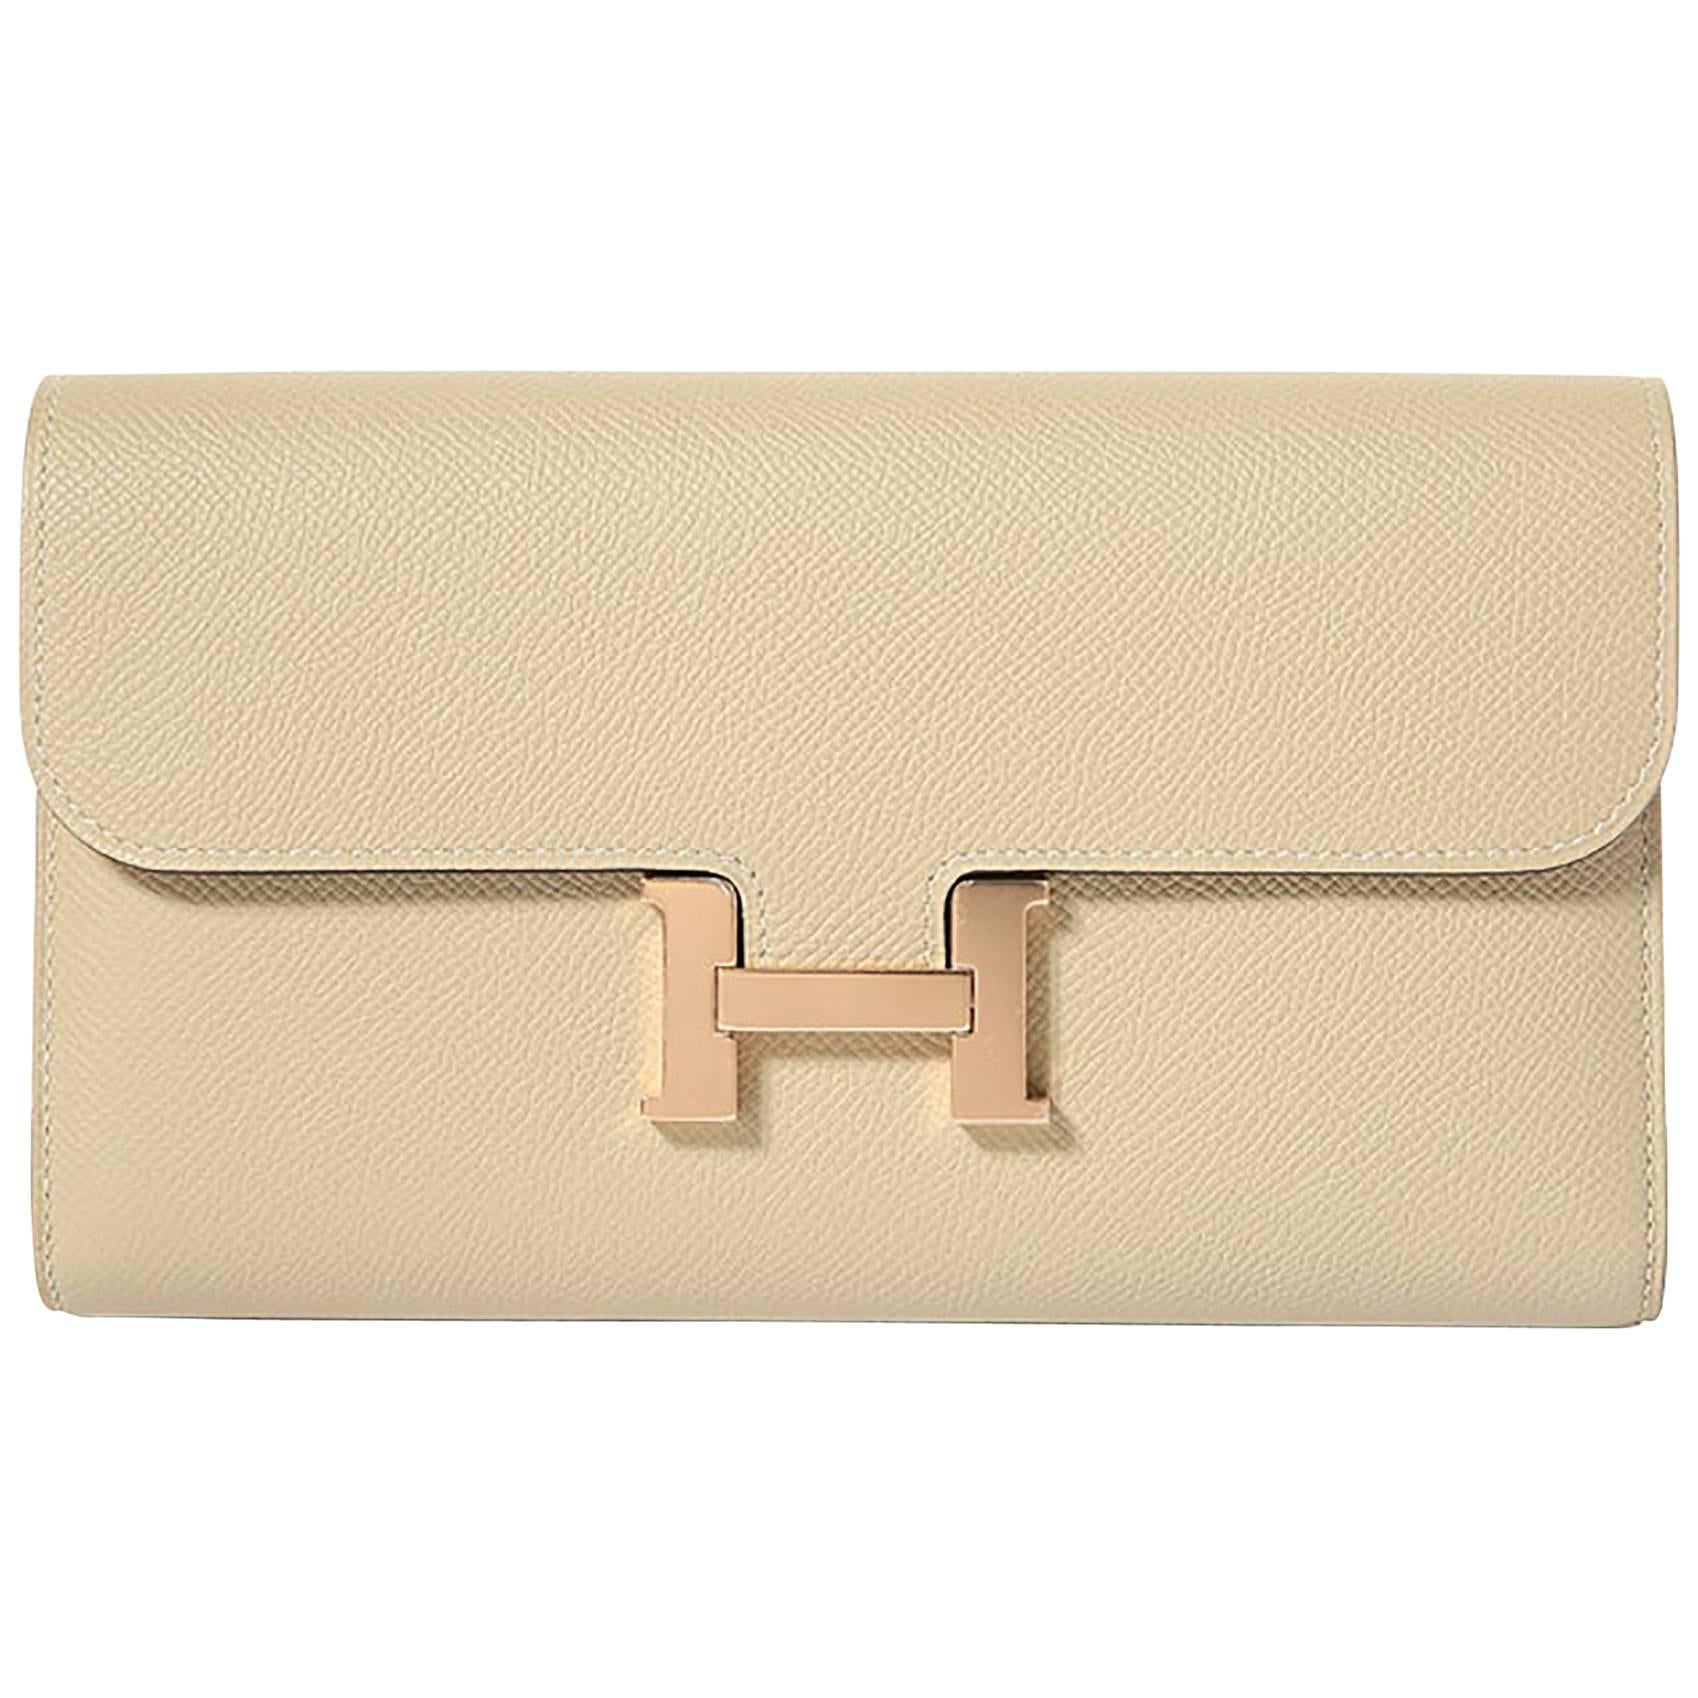 Hermes Constance Wallet Epsom Leather Craie Color GHW